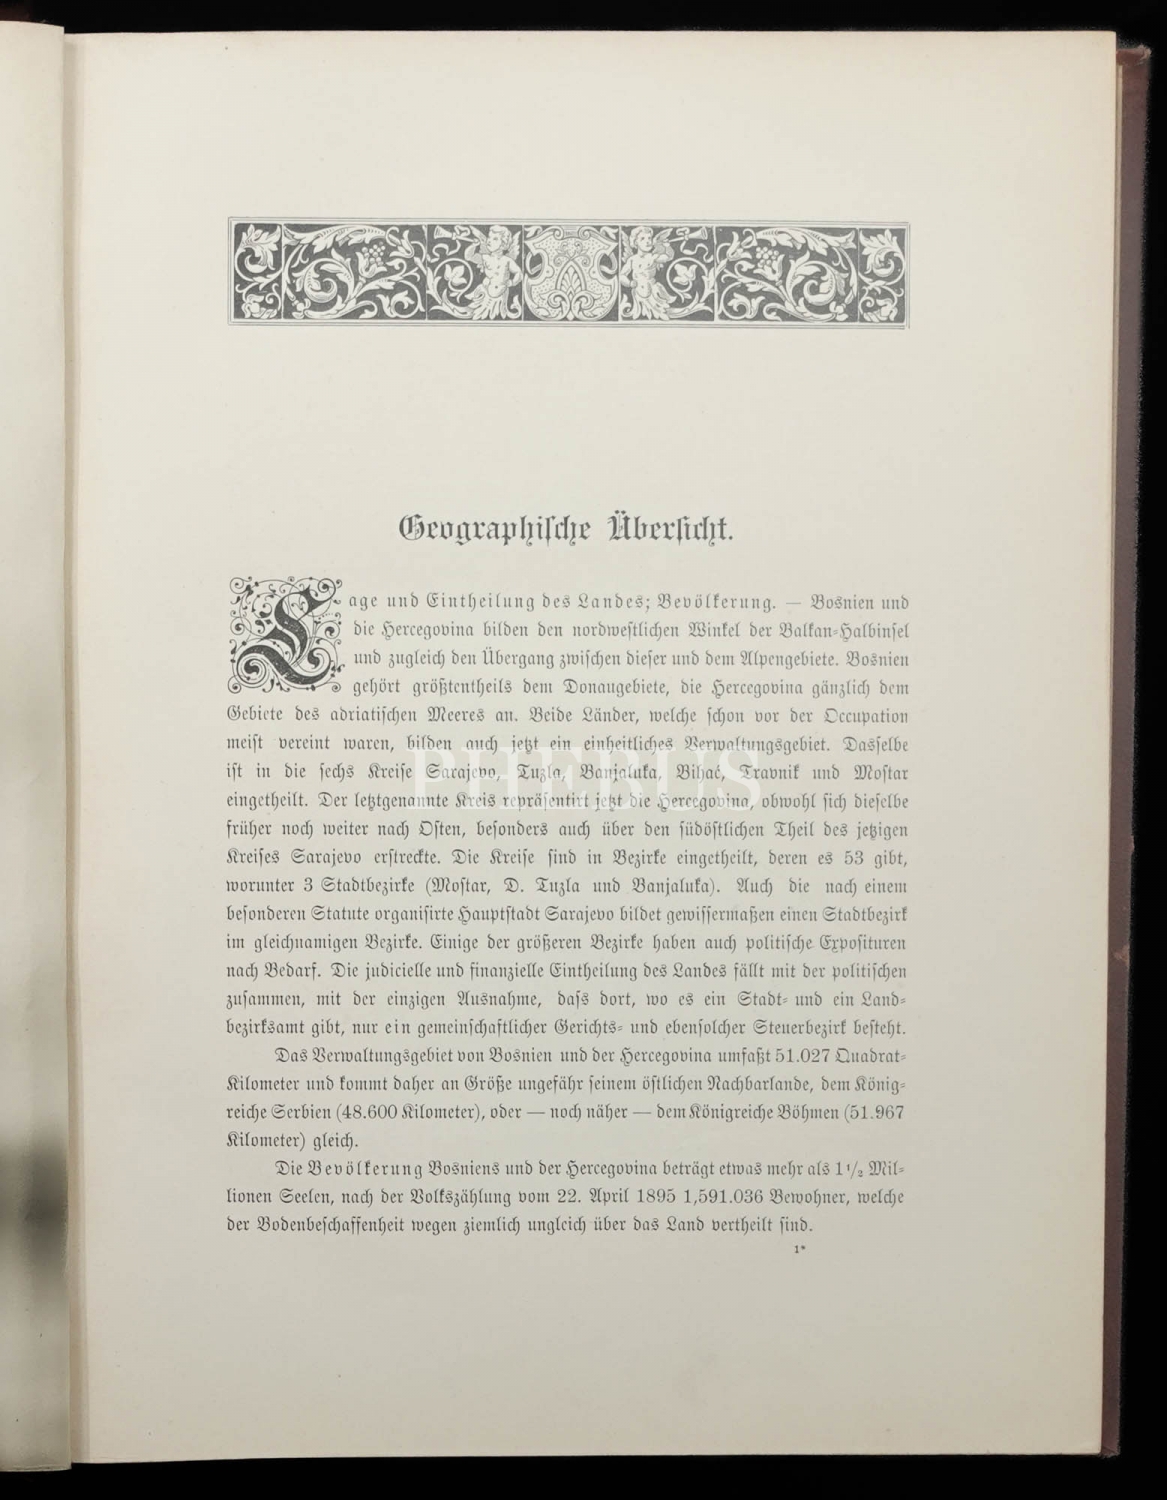 DIE ÖSTERREICHISCH-UNGARISCHE MONARCHIE IN WORT UND BILD (11,22 ve 23 Ciltleri), Taatsdruckerei KK Hof-und, 1892, Wien, 352+594+516 sayfa, 22x28 cm...